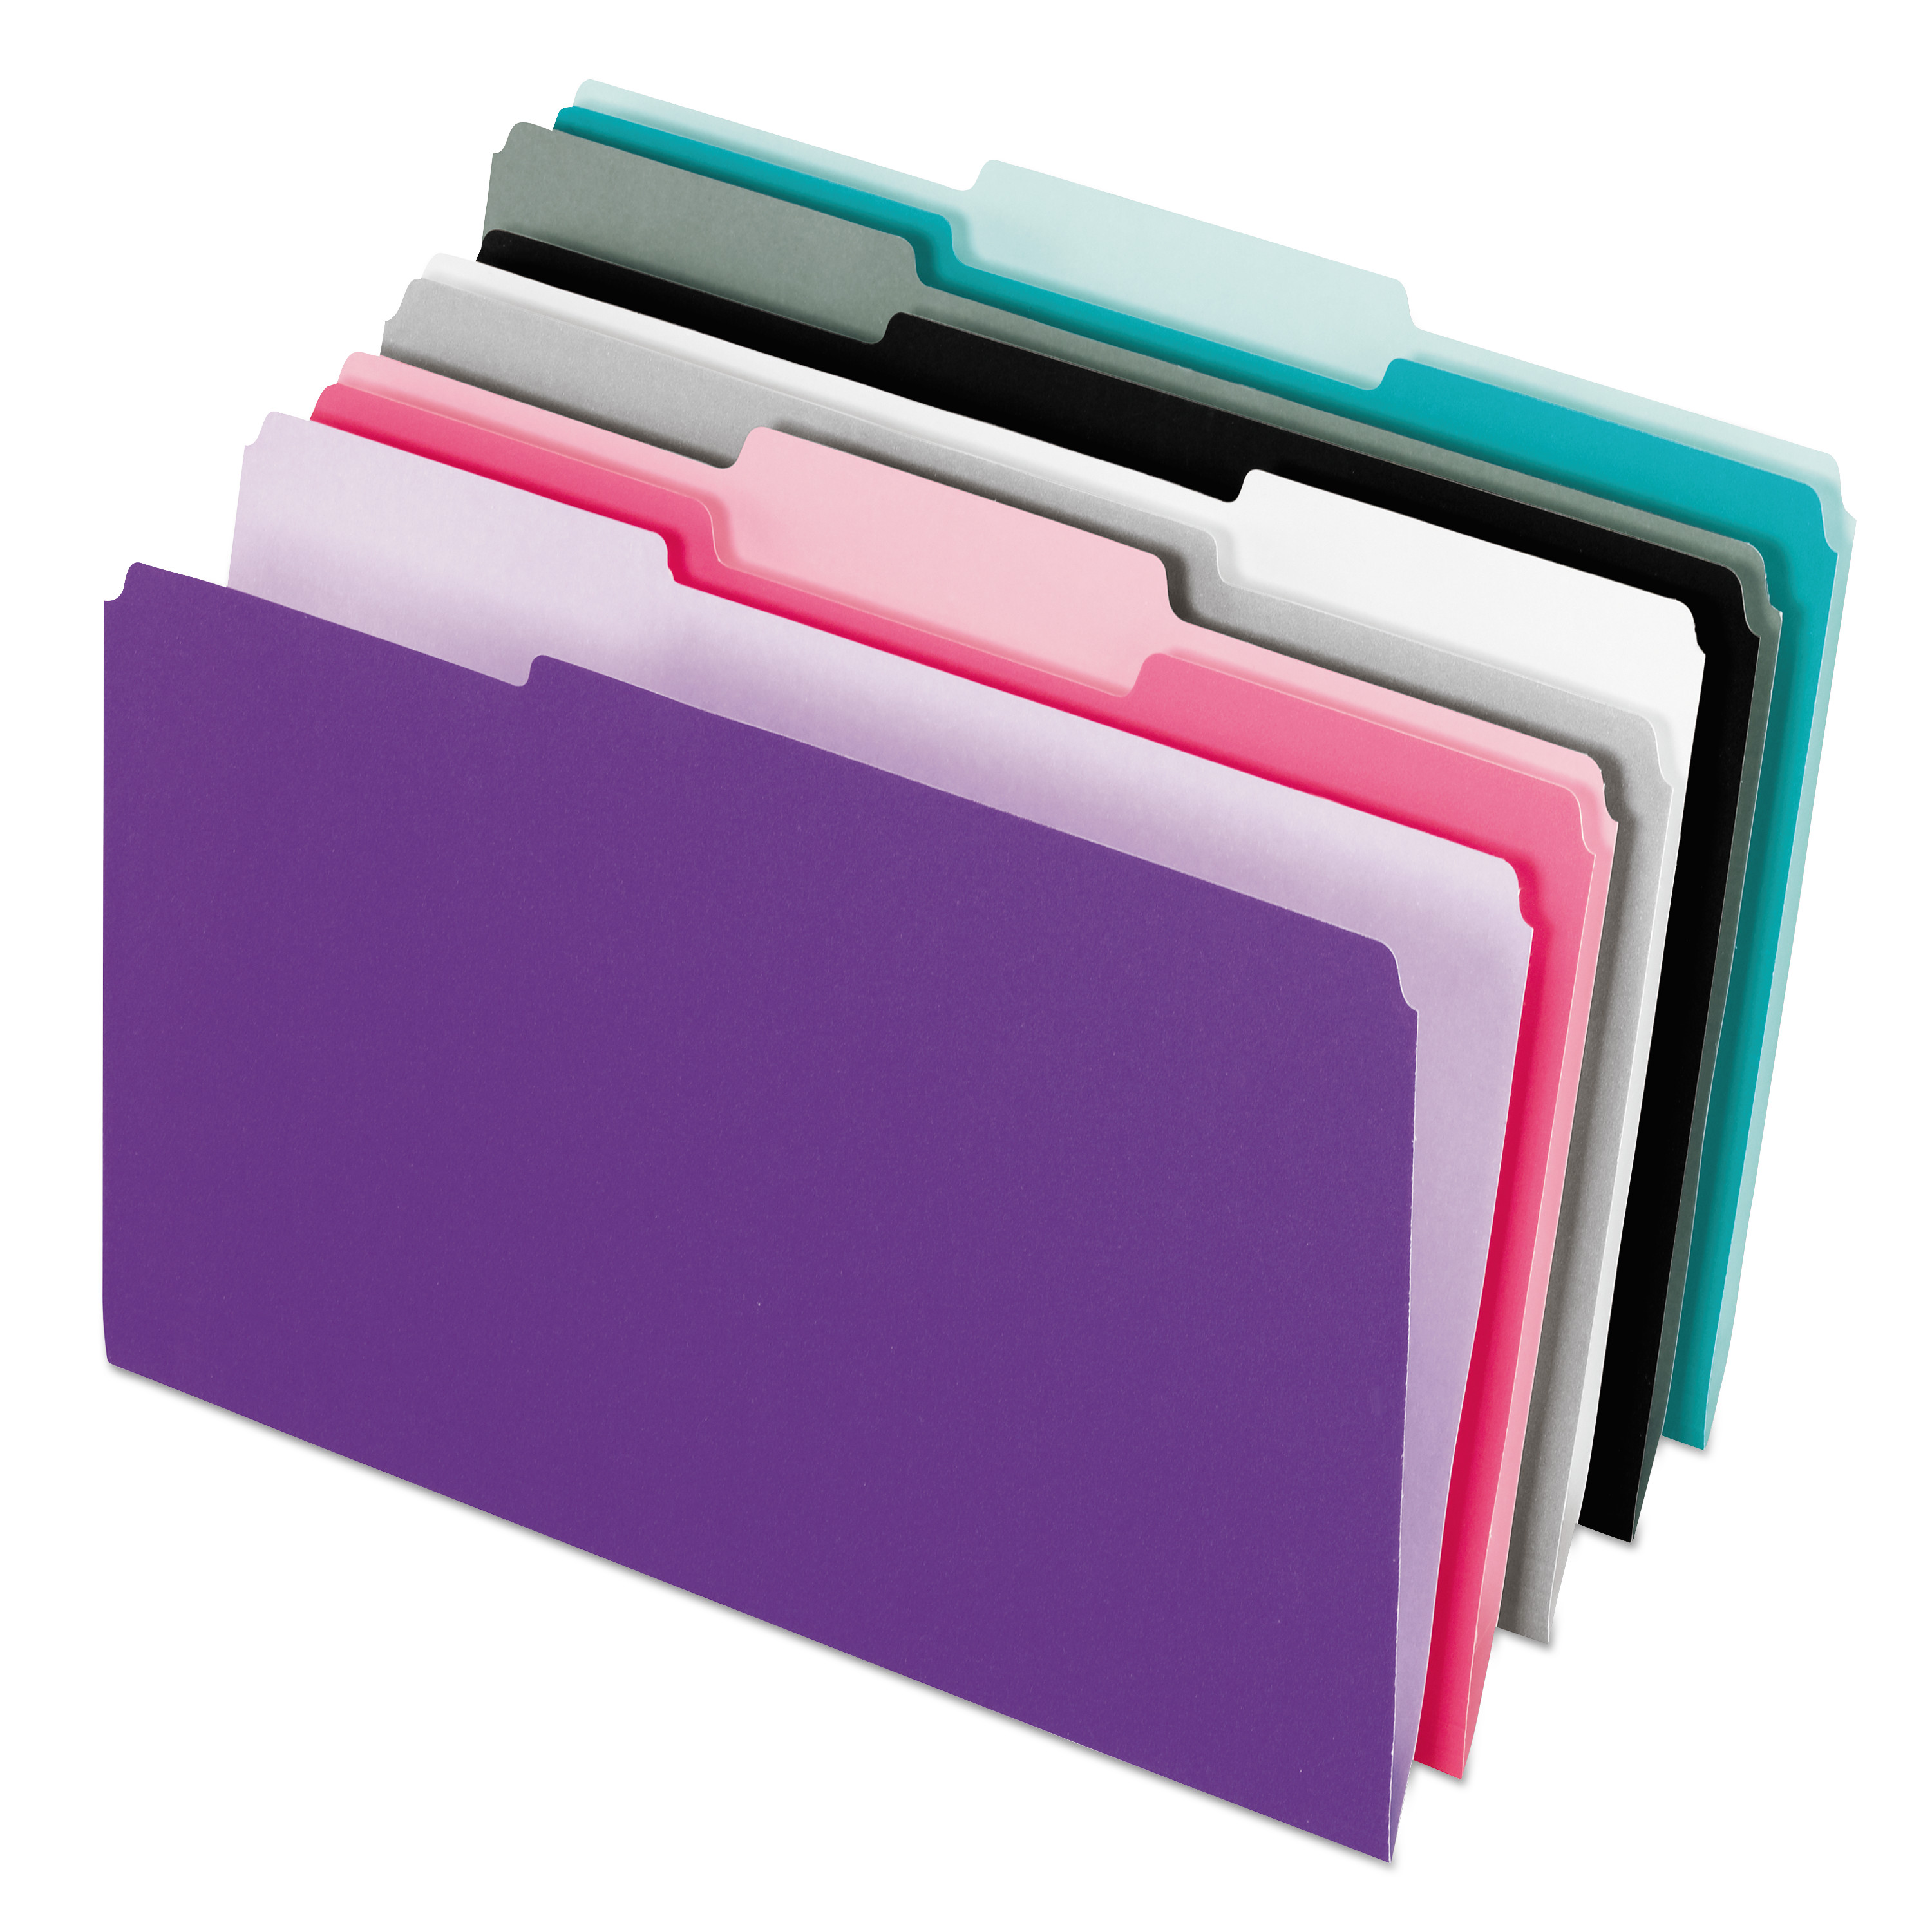  Pendaflex 4210 1/3 ASST-2 Interior File Folders, 1/3-Cut Tabs, Letter Size, Assortment 1, 100/Box (PFX421013ASST2) 